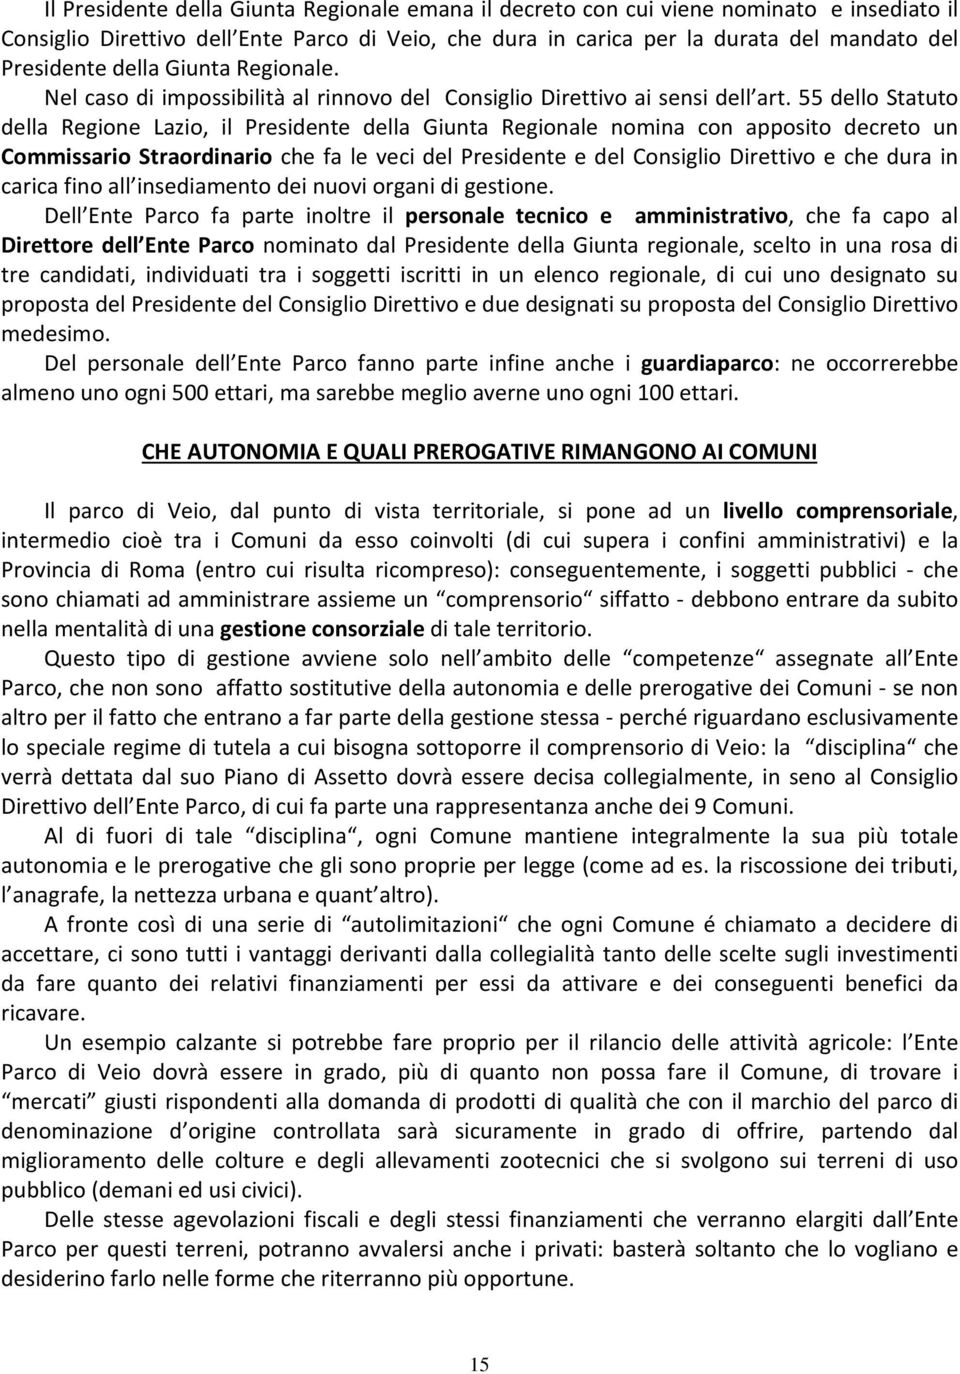 55 dello Statuto della Regione Lazio, il Presidente della Giunta Regionale nomina con apposito decreto un Commissario Straordinario che fa le veci del Presidente e del Consiglio Direttivo e che dura